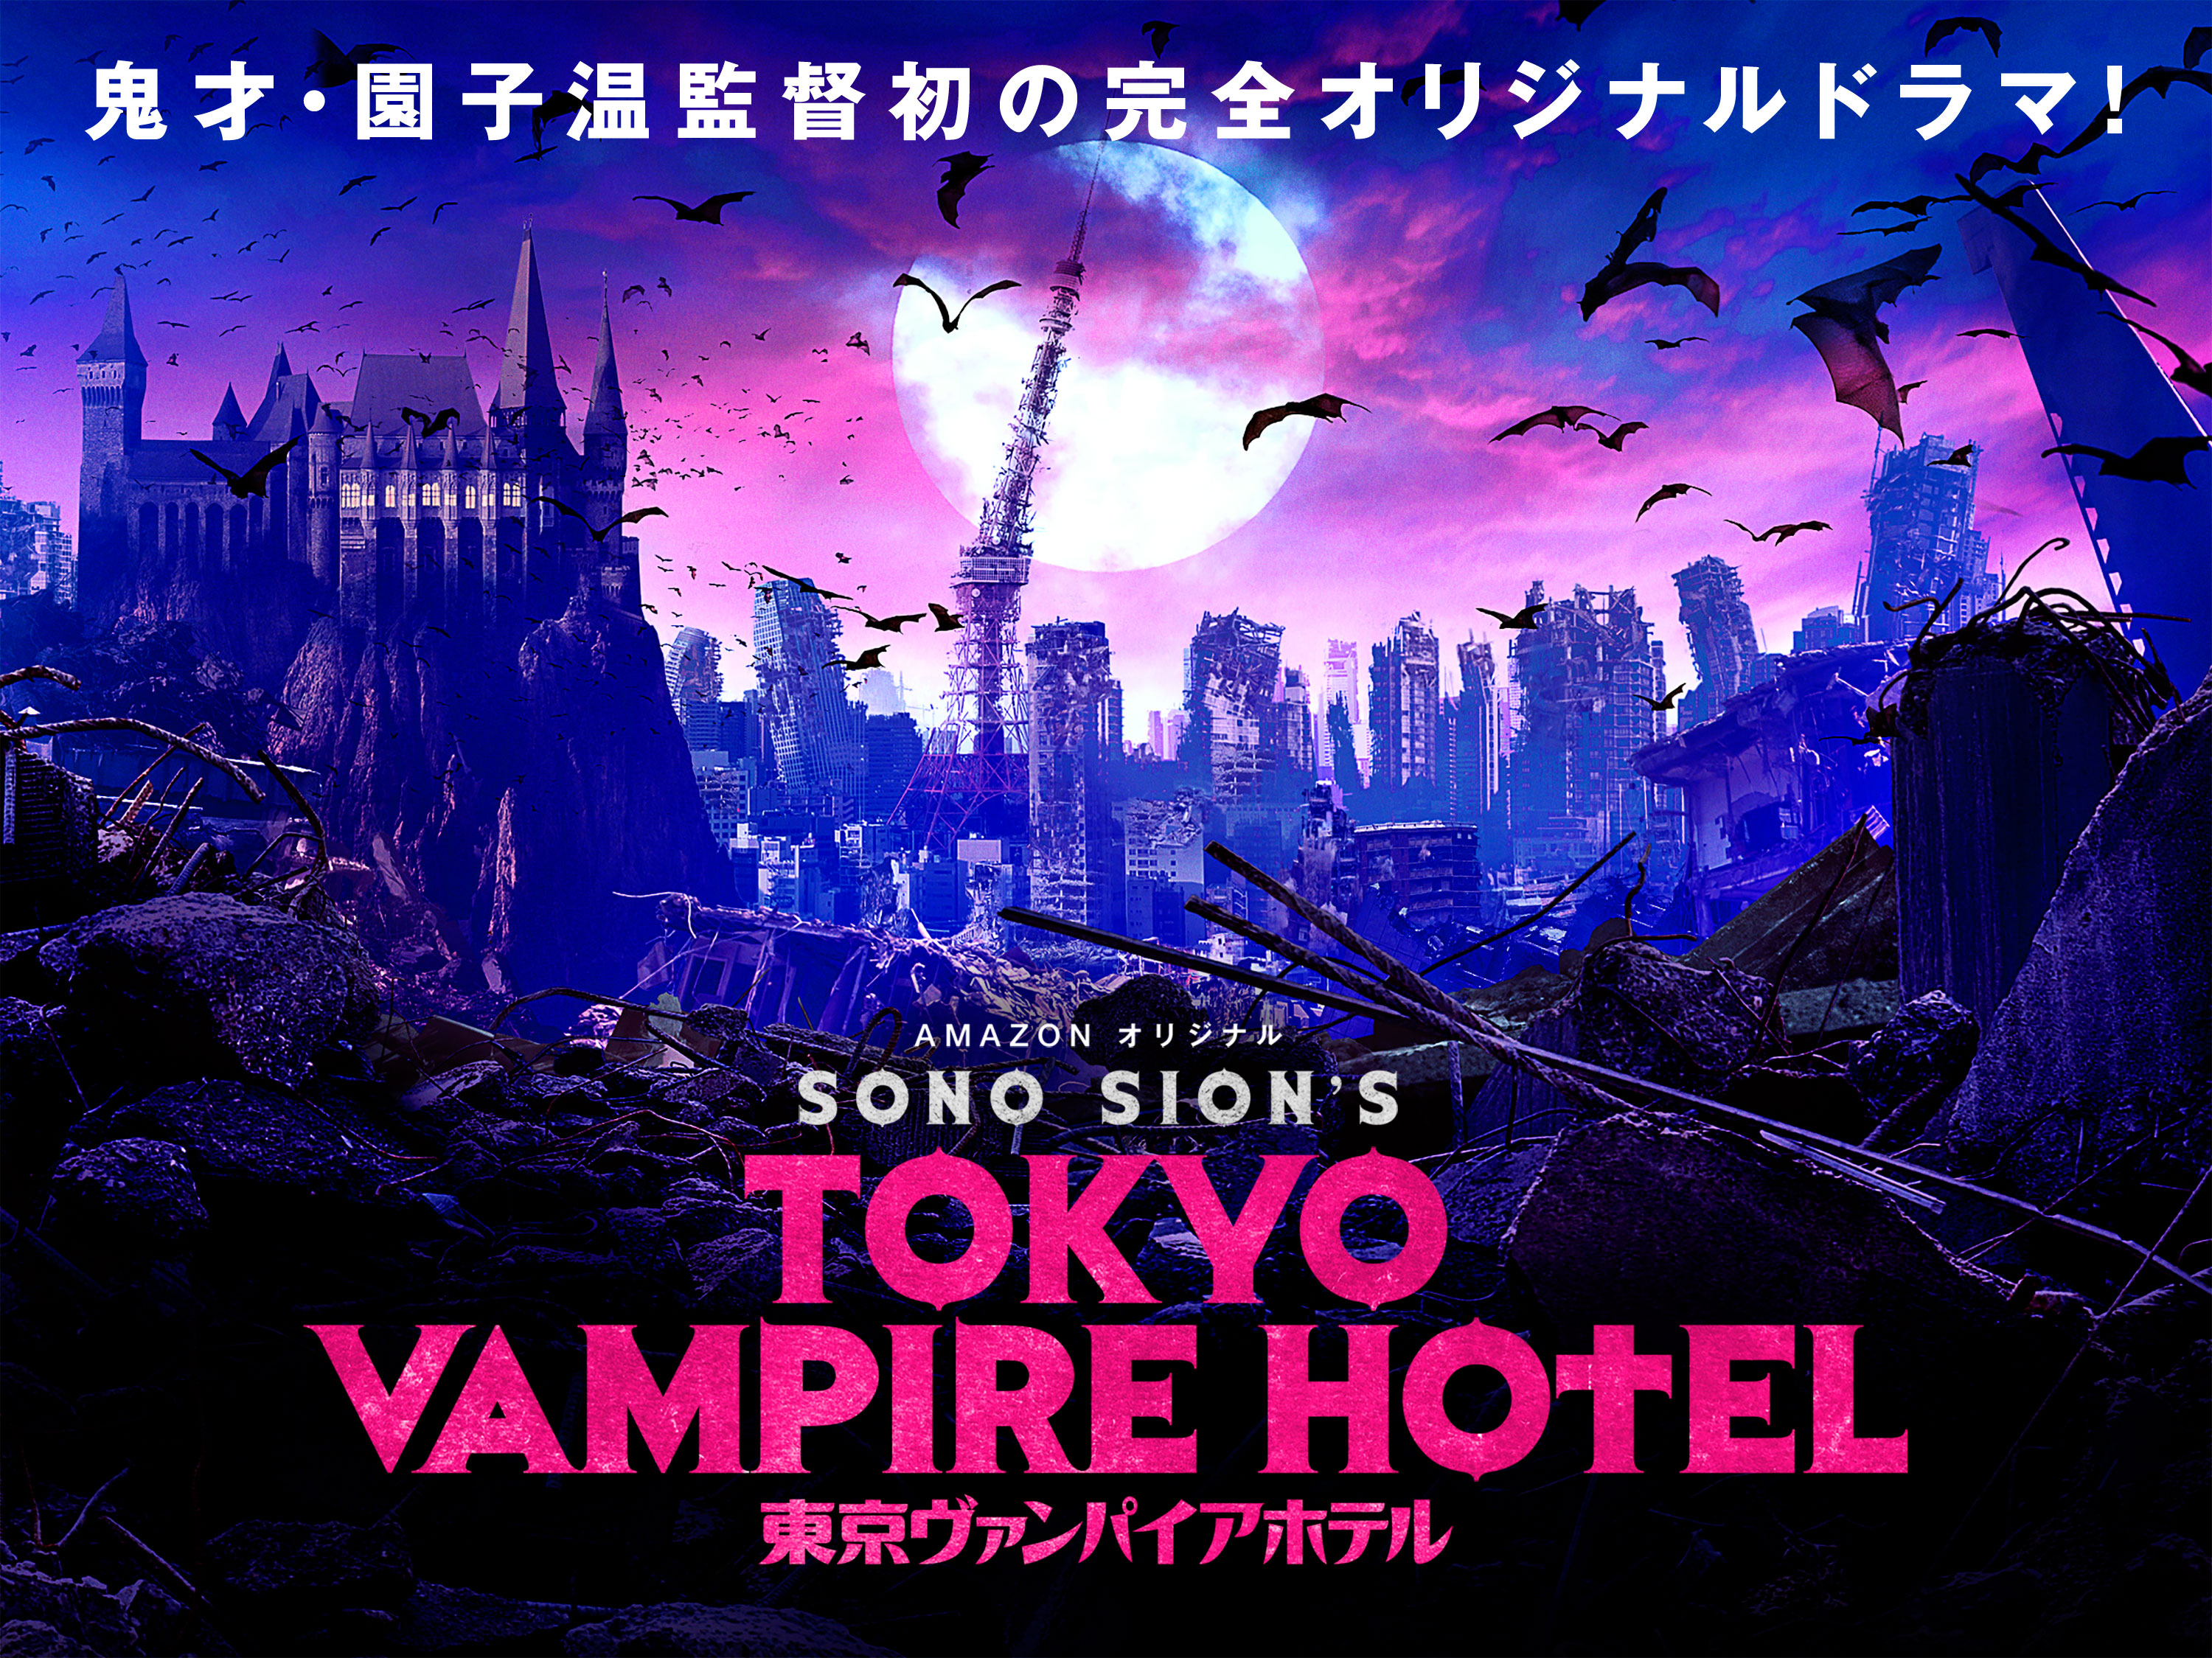 Tokyo Vampire Hotel (11)